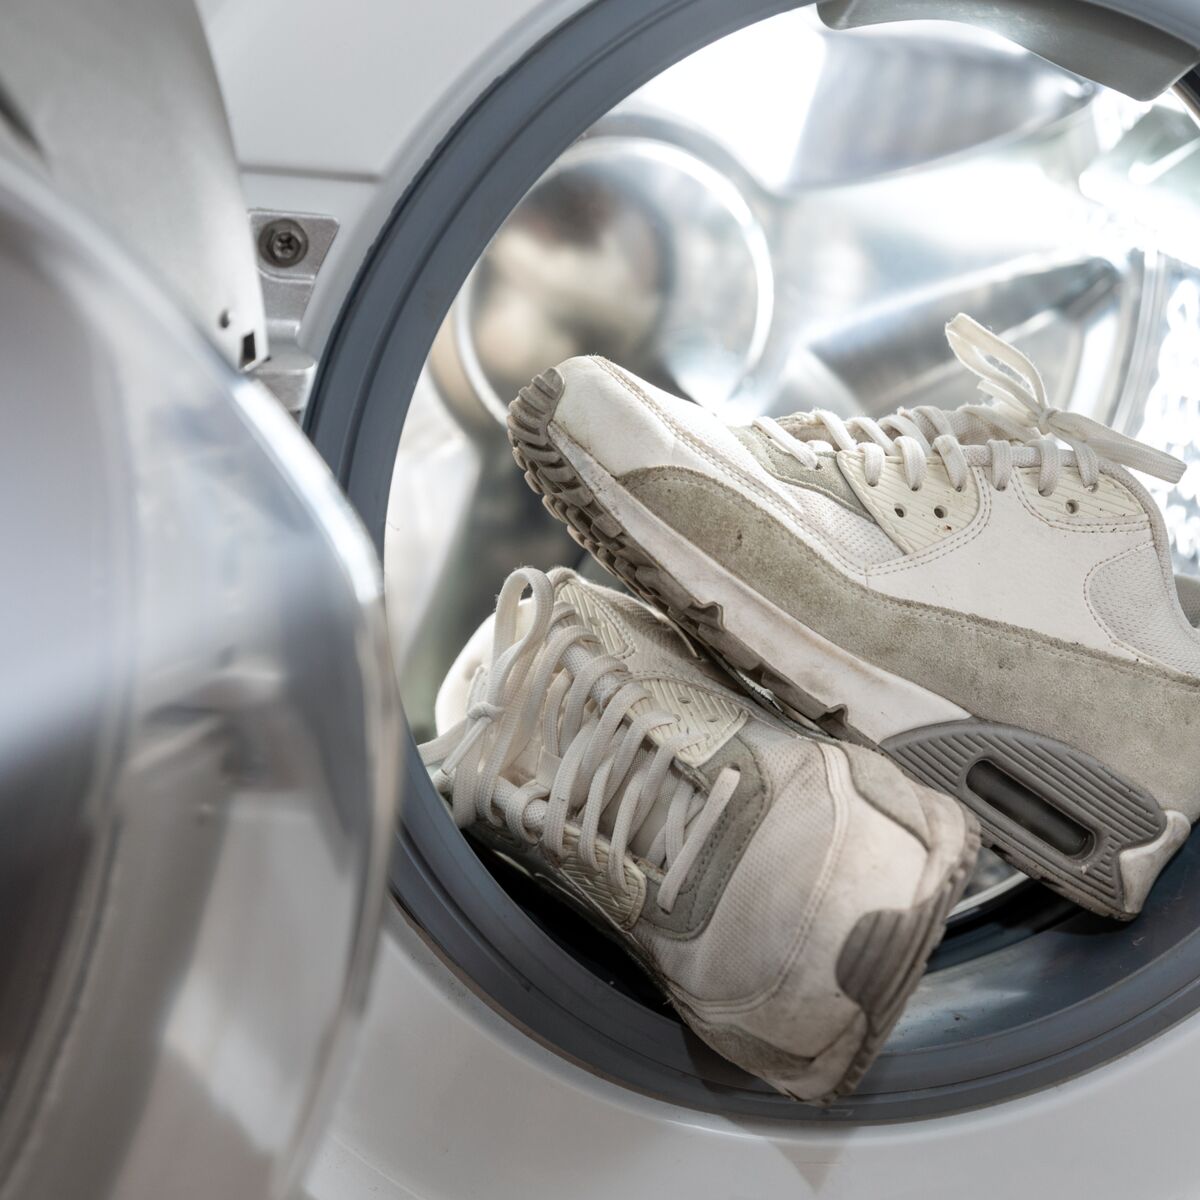 Peut-on laver des baskets à la machine à laver ? : Femme Actuelle Le MAG